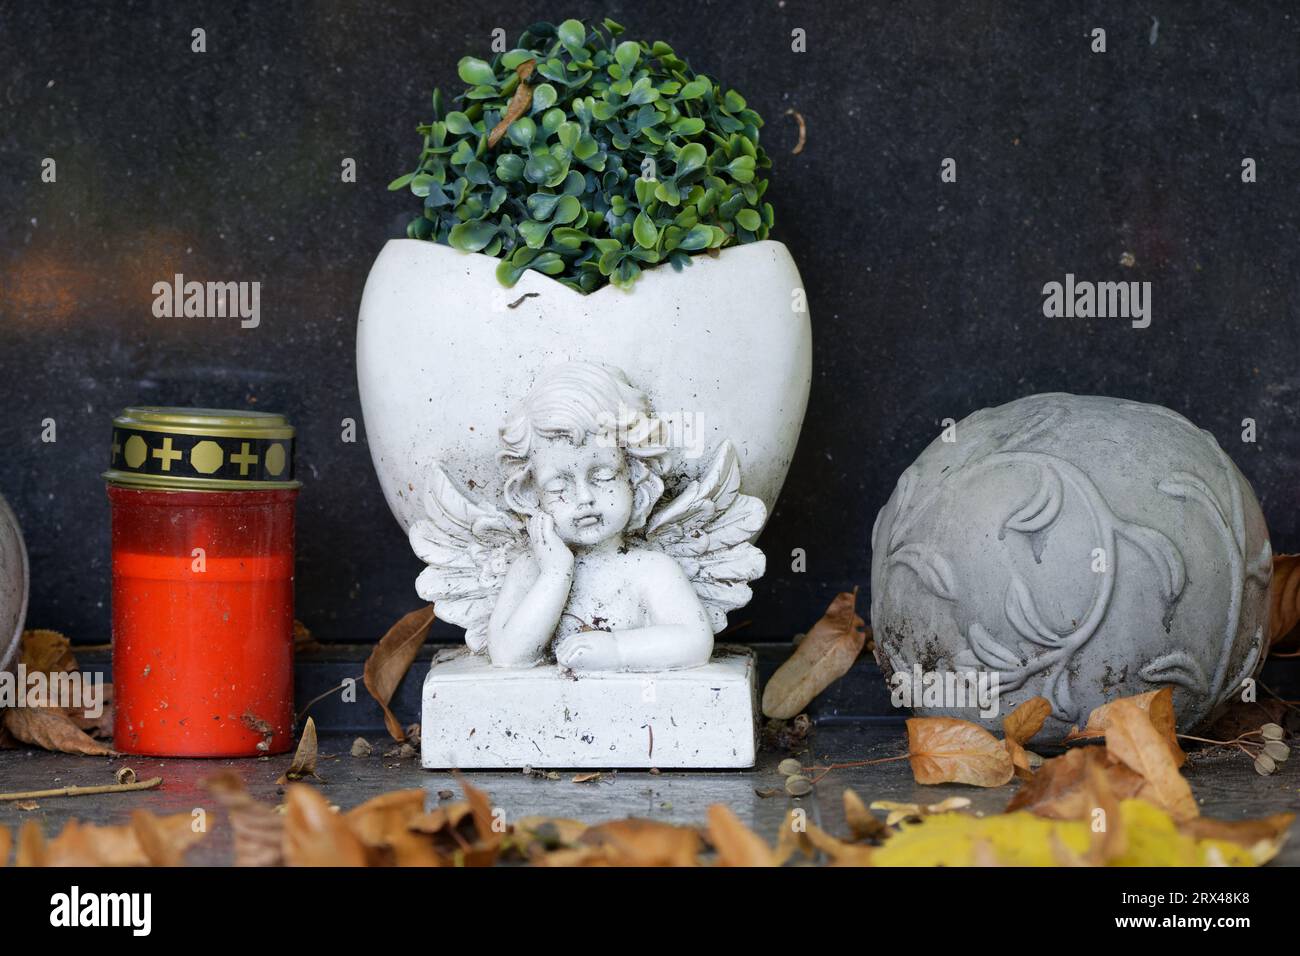 Herbstlaub liegt auf einer Grabdekoration mit Grablicht und einer Blumenvase mit Engelsfigur Stockfoto